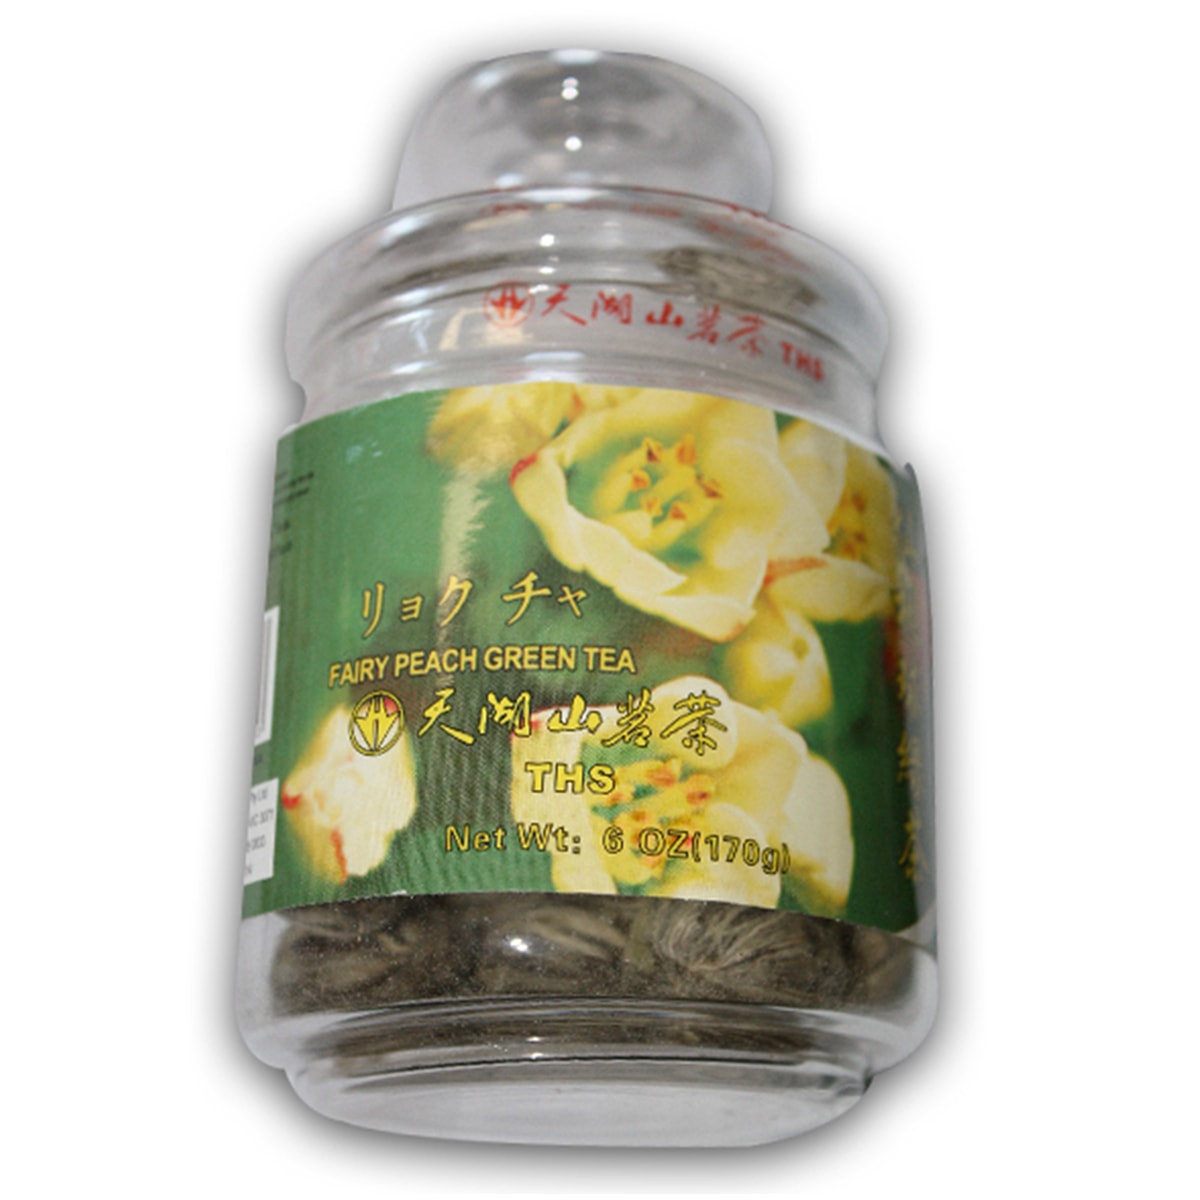 Buy Tian Hu Shan Fairy Peach Green Tea (Xiantao Ball Green Tea) - 170 gm